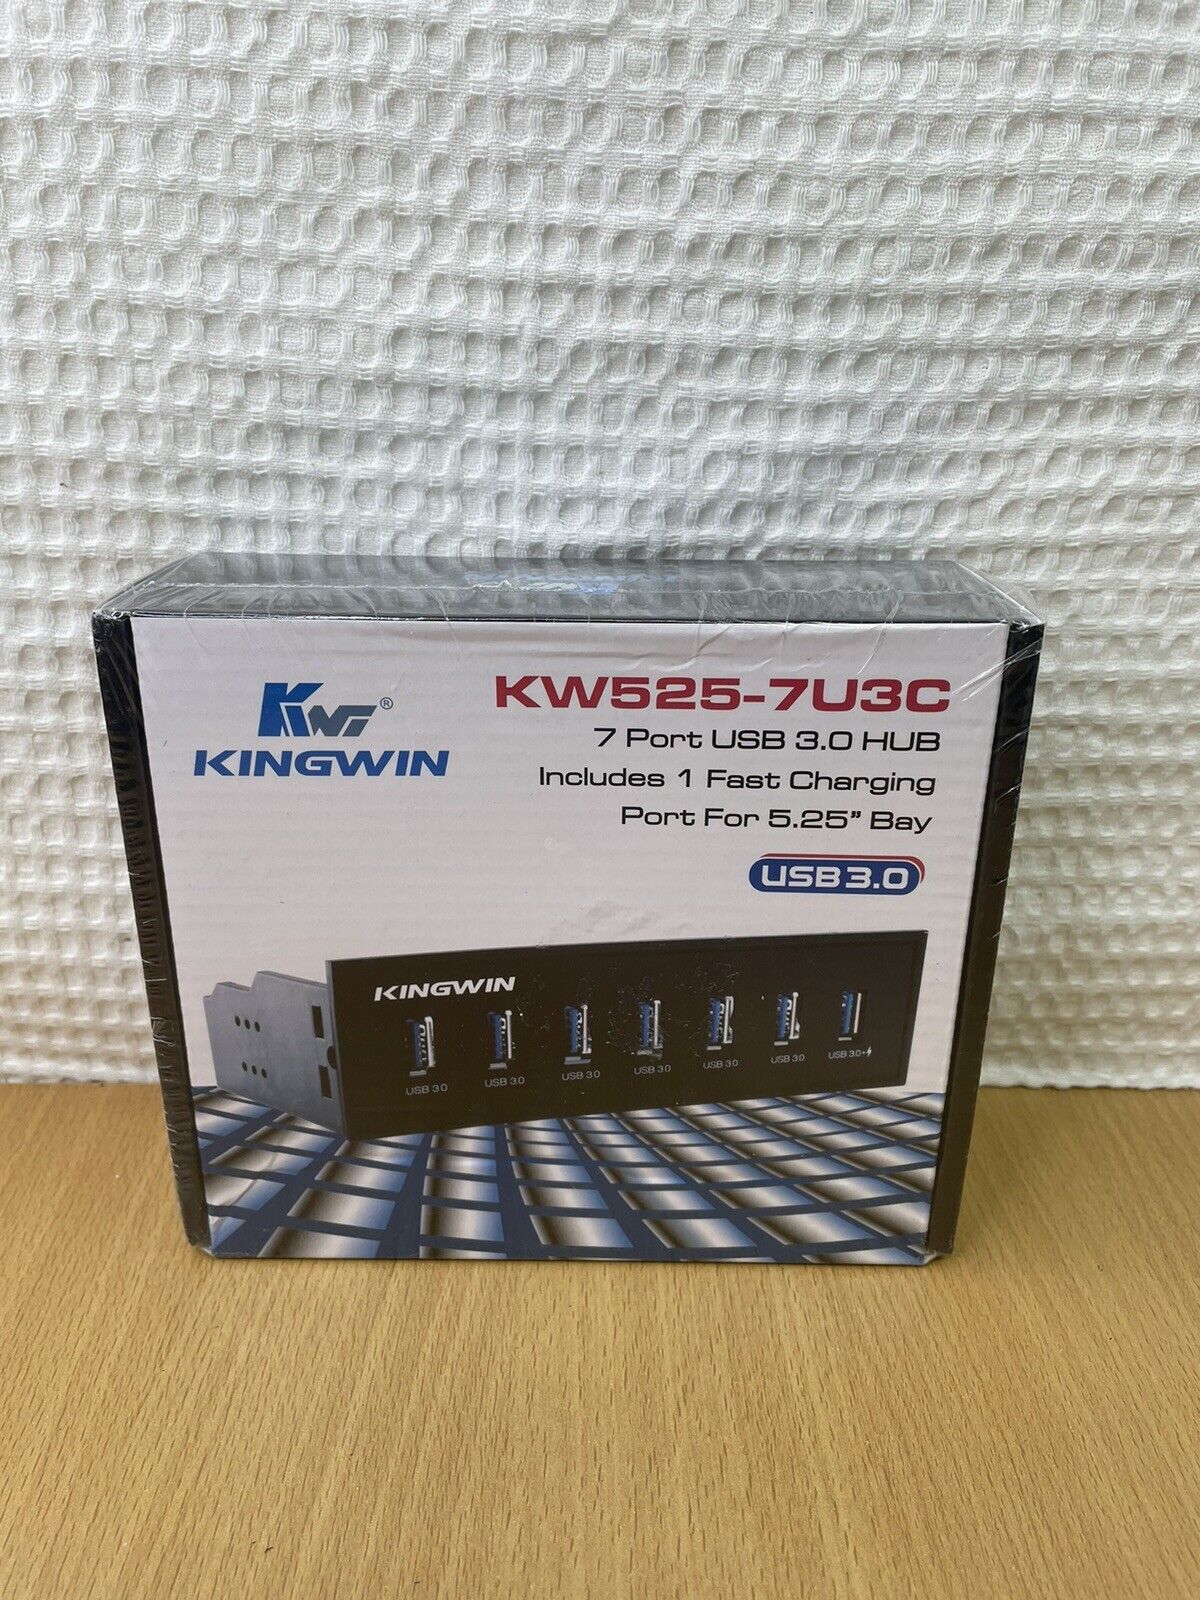 Kingwin KW525-7U3C 7-Port USB 3.0 Hub with 1 x Fast Charging Port Brand New